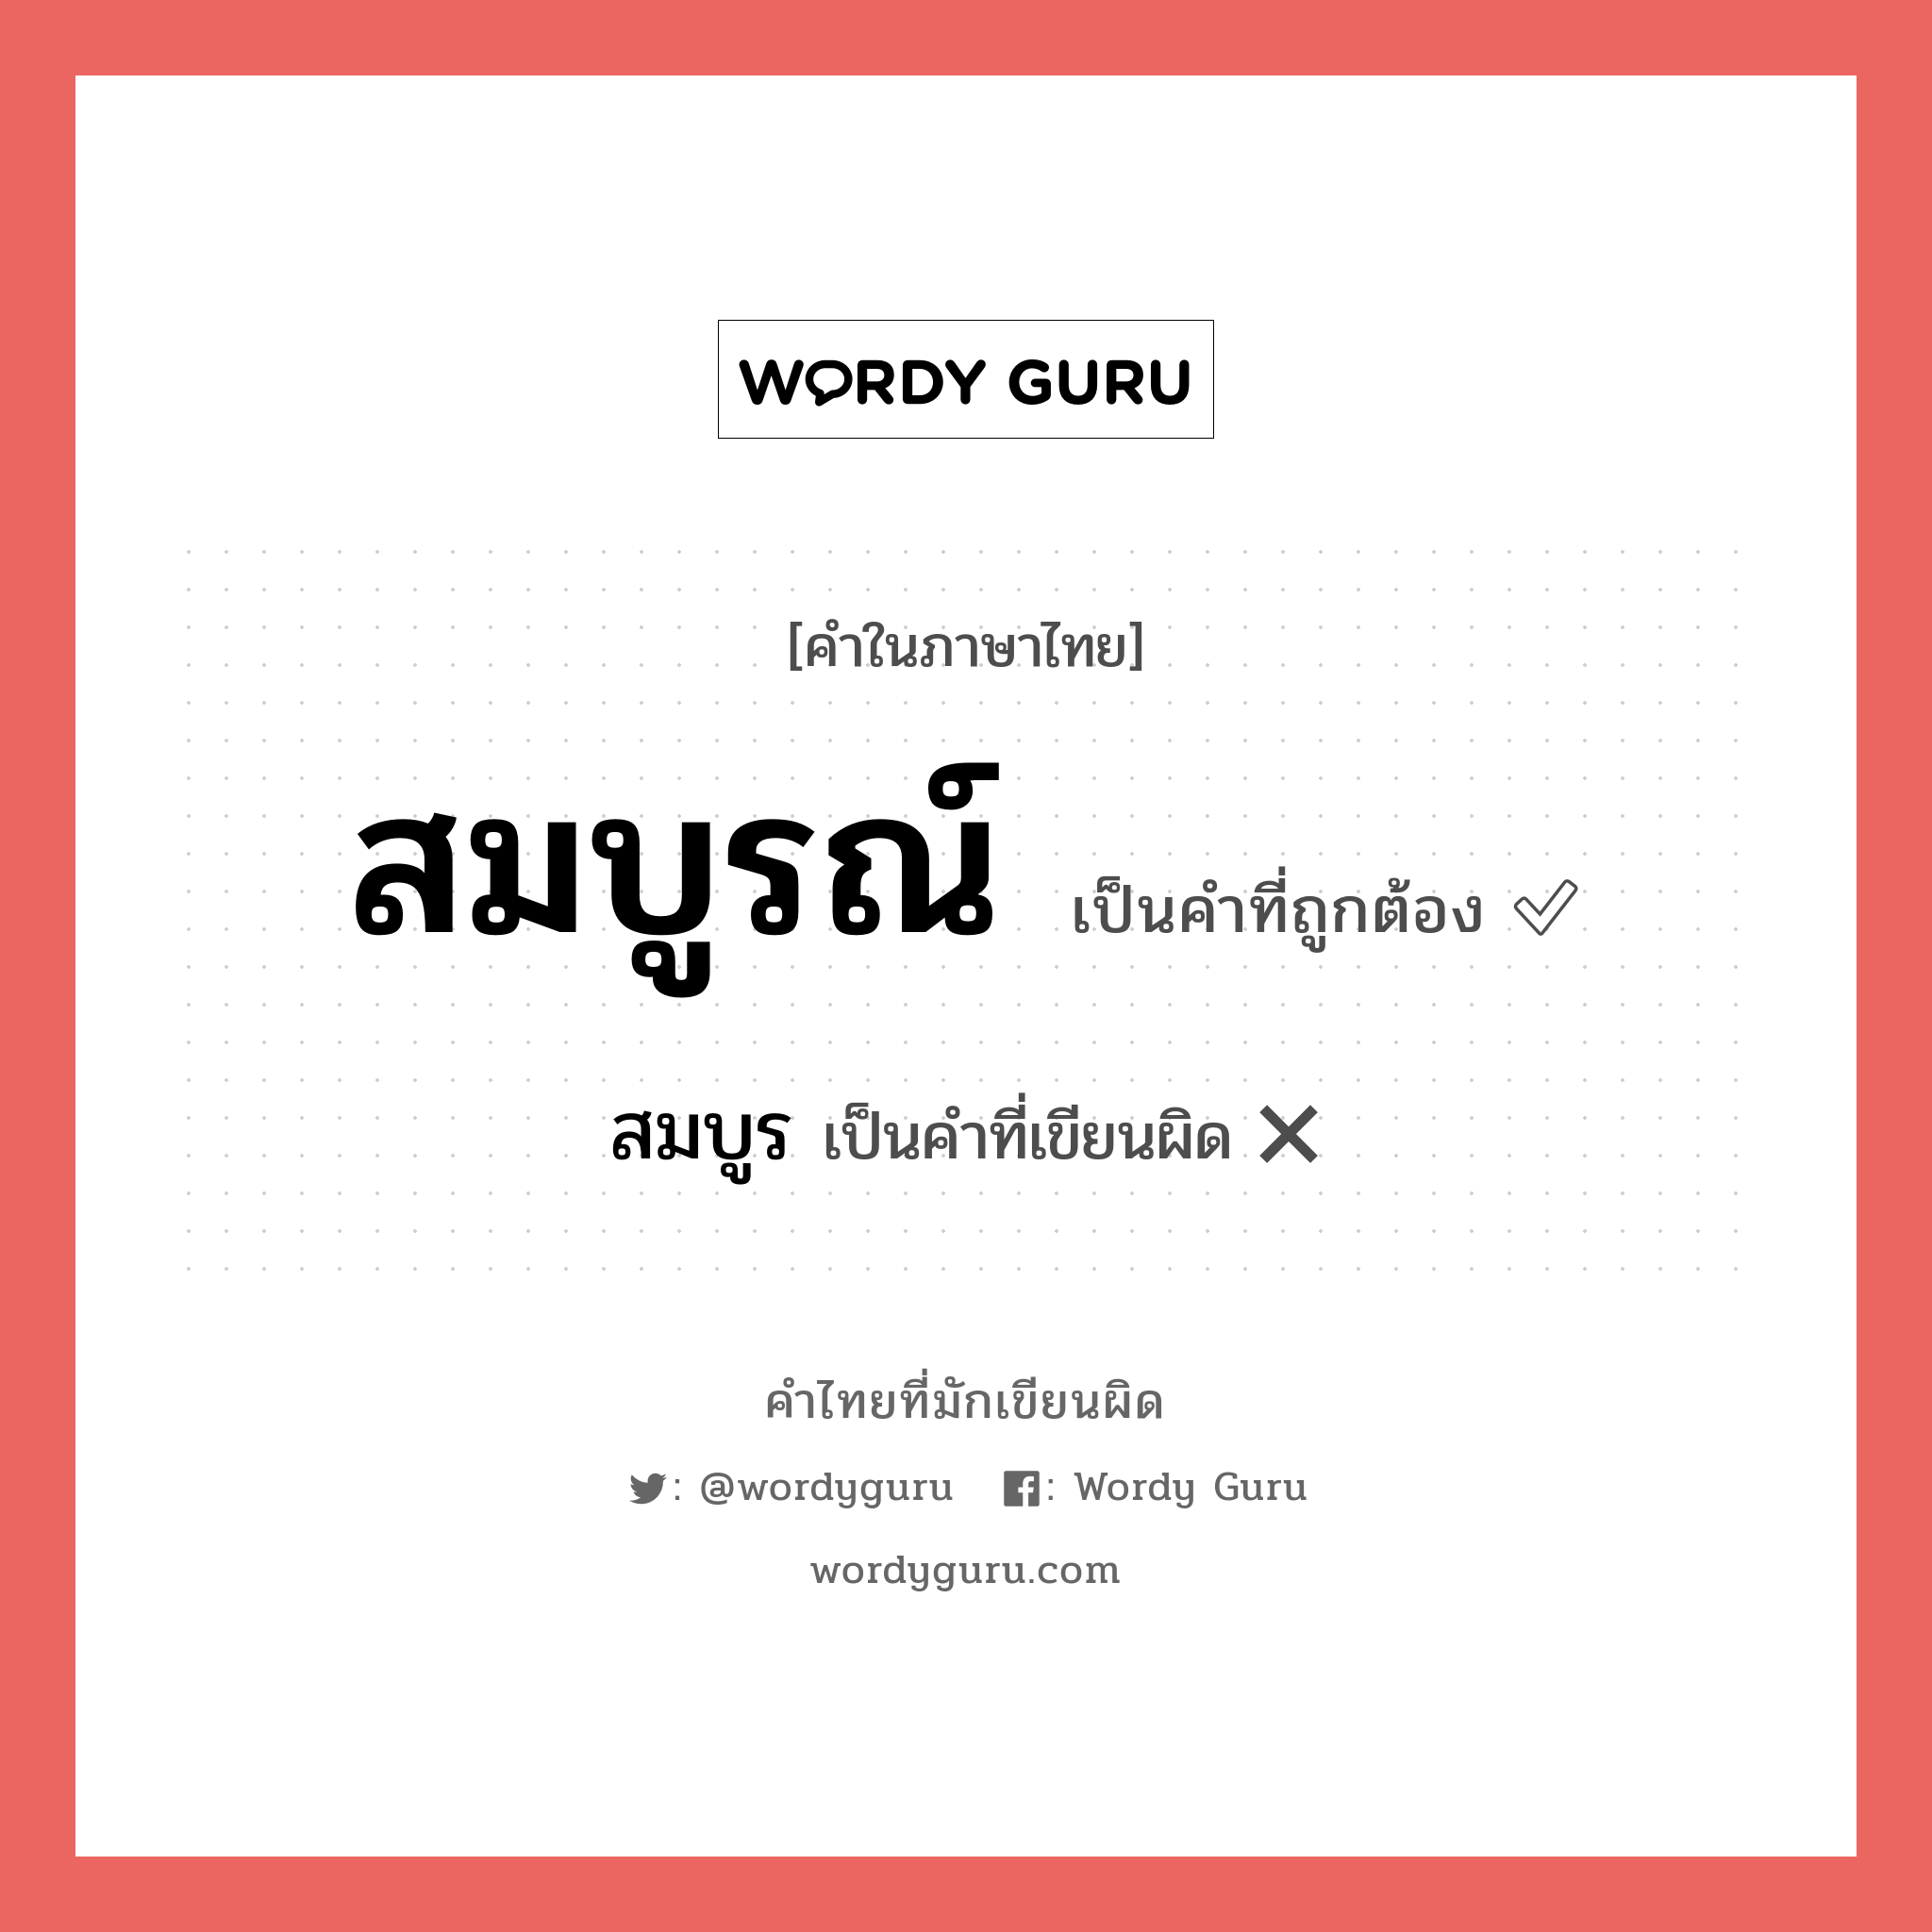 สมบูรณ์ หรือ สมบูร คำไหนเขียนถูก?, คำในภาษาไทยที่มักเขียนผิด สมบูรณ์ คำที่ผิด ❌ สมบูร